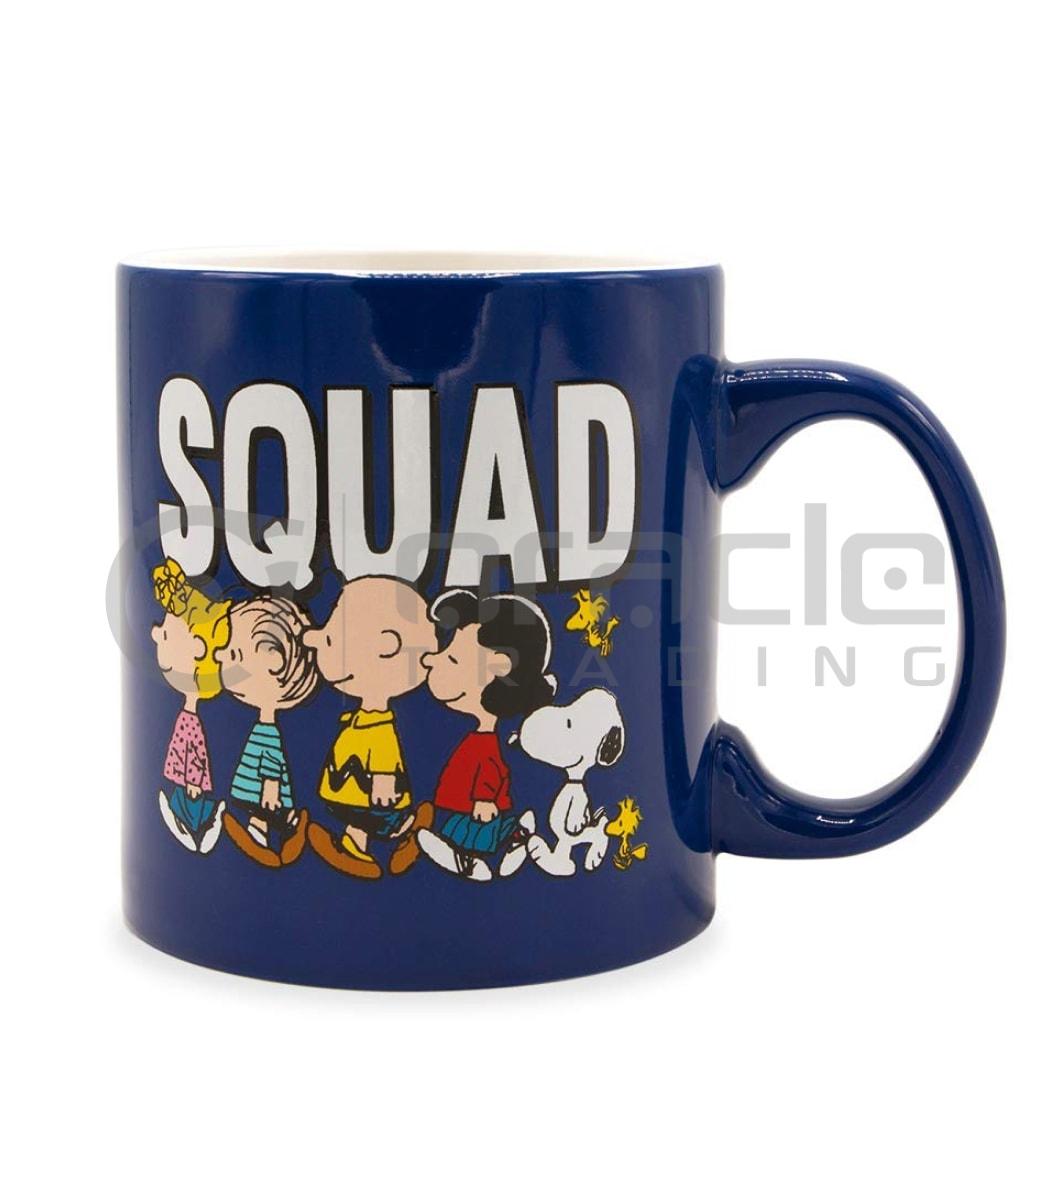 Peanuts Jumbo Mug - The Squad